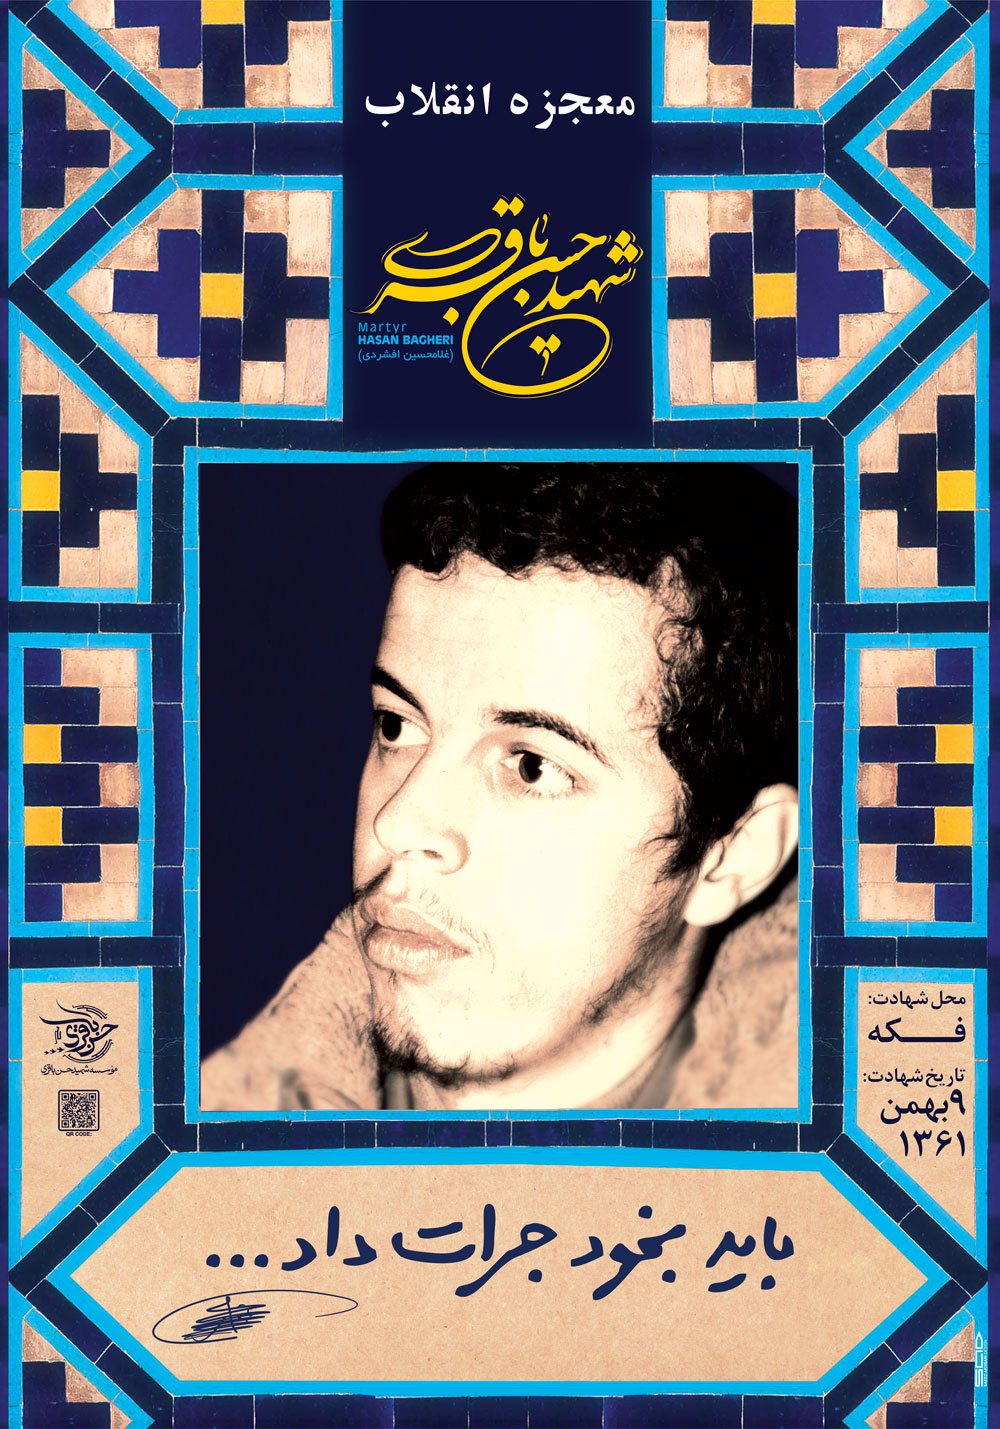 پوستر ویژه سی و سومین سالگرد شهادت شهید حسن باقری (غلامحسین افشردی)